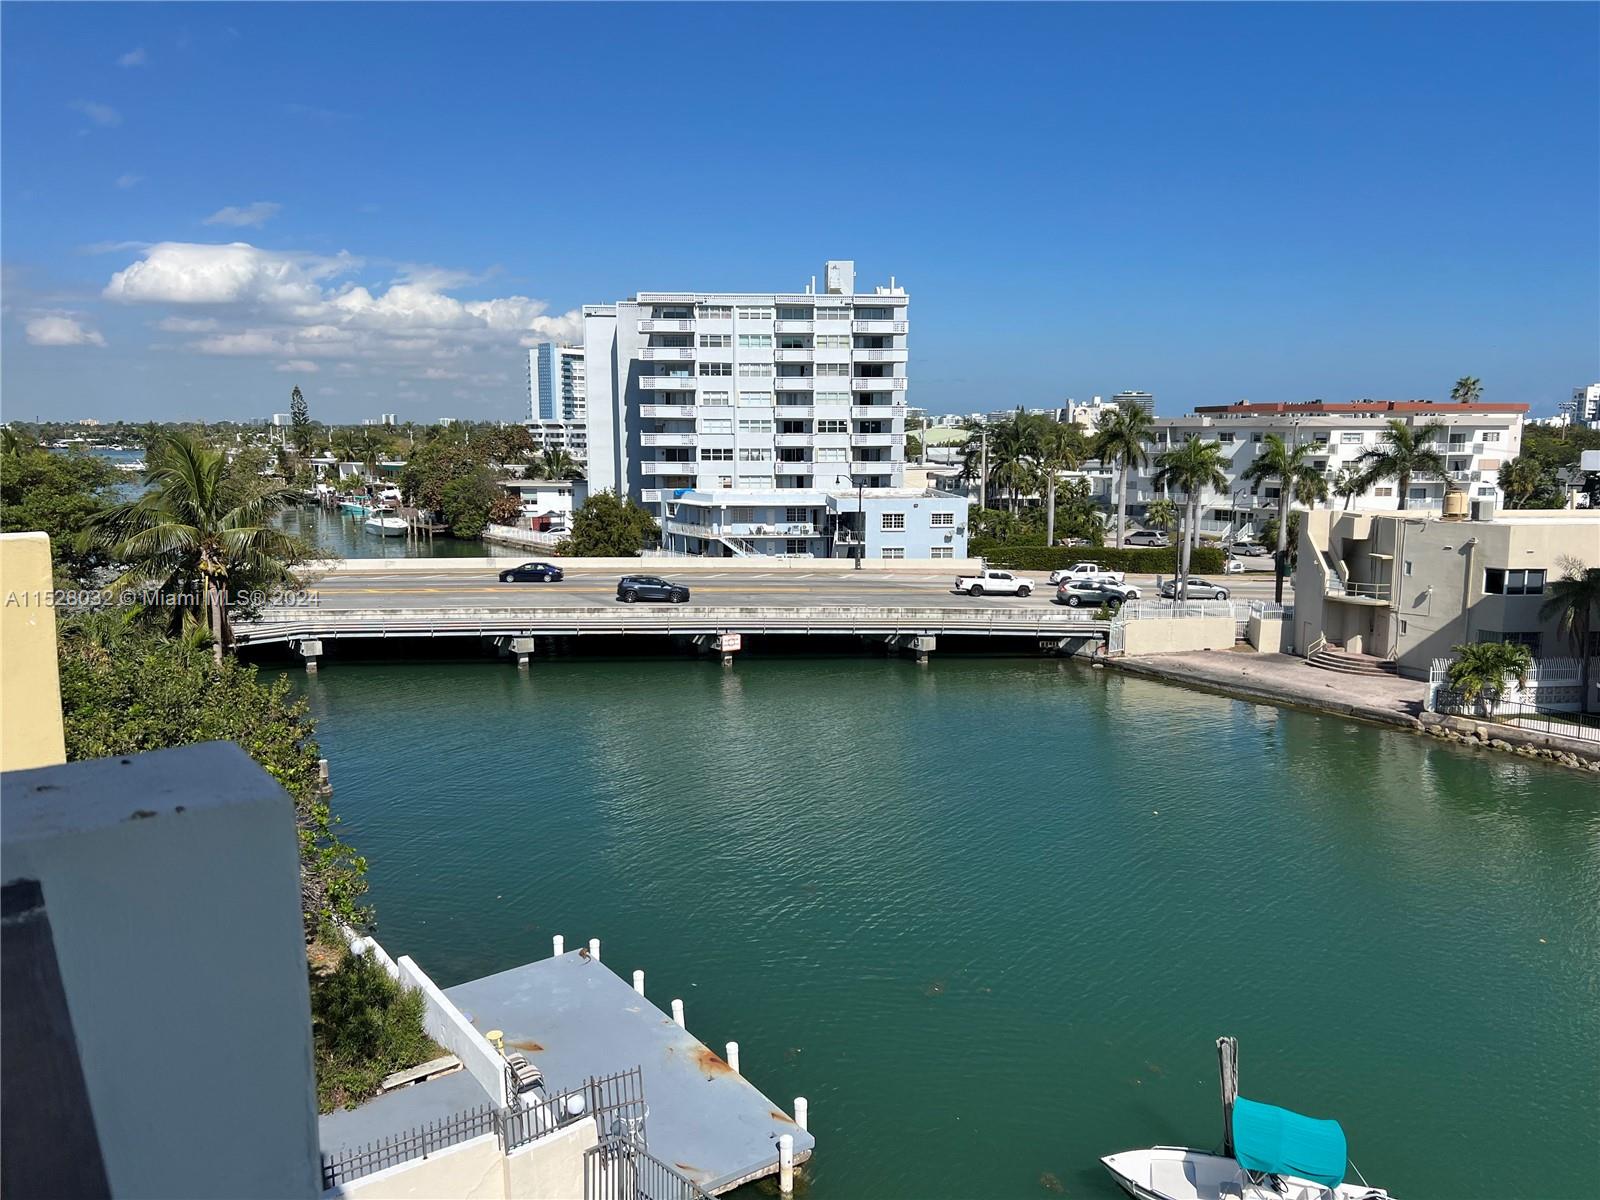 Property for Sale at 6937 E Bay Dr 506, Miami Beach, Miami-Dade County, Florida - Bedrooms: 2 
Bathrooms: 2  - $380,000